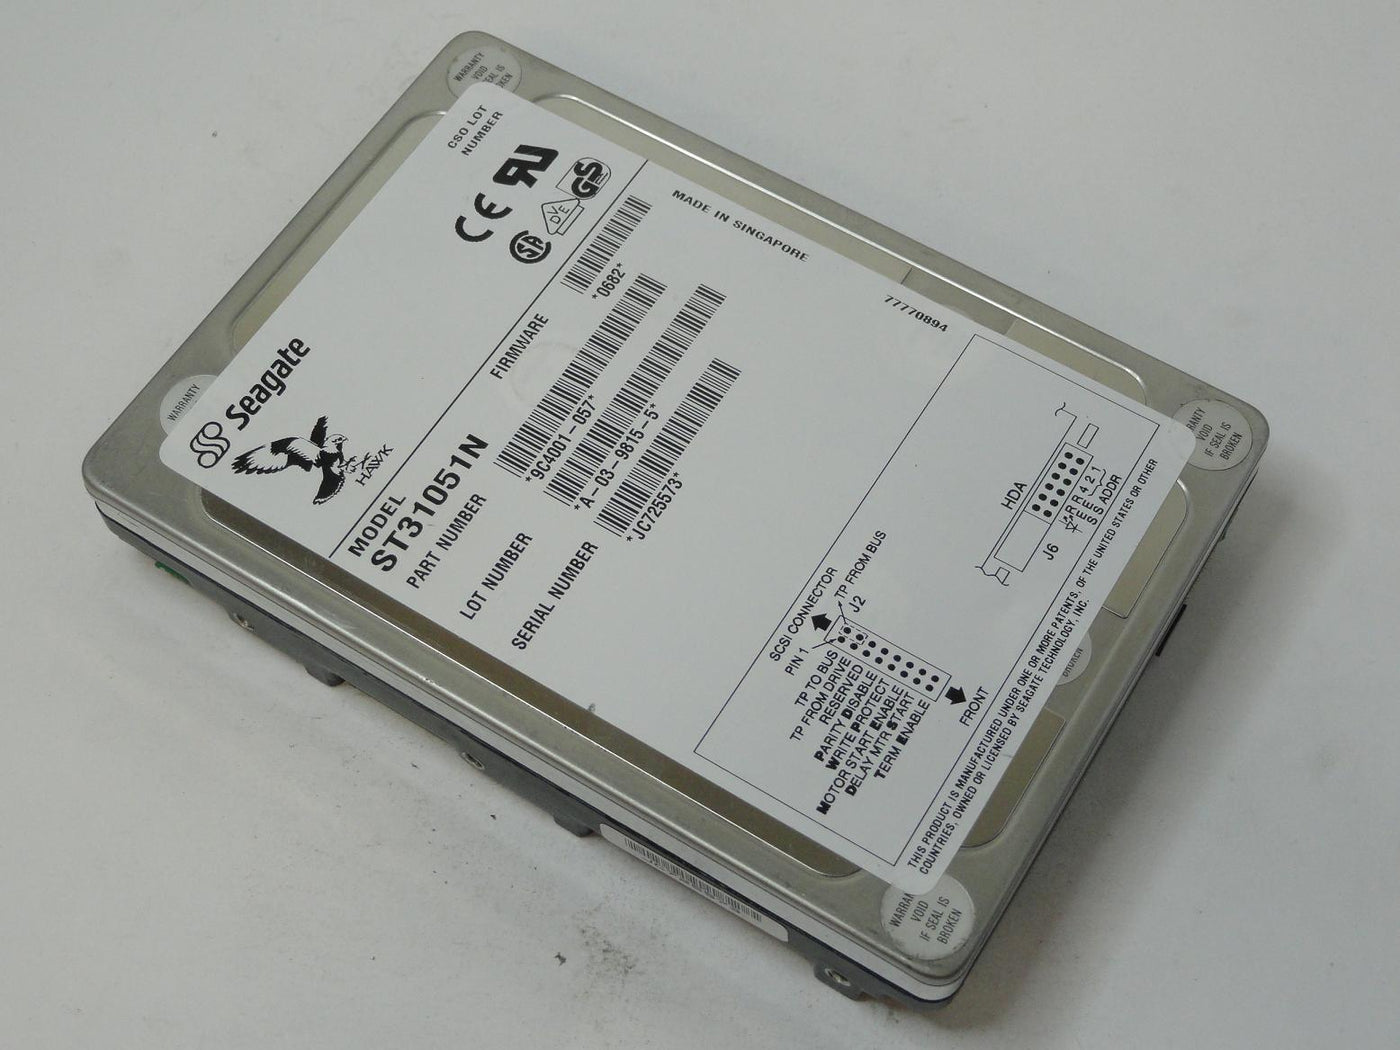 9C4001-057 - Seagate 1GB SCSI 50Pin 5400rpm 3.5in Hawk HDD - ASIS